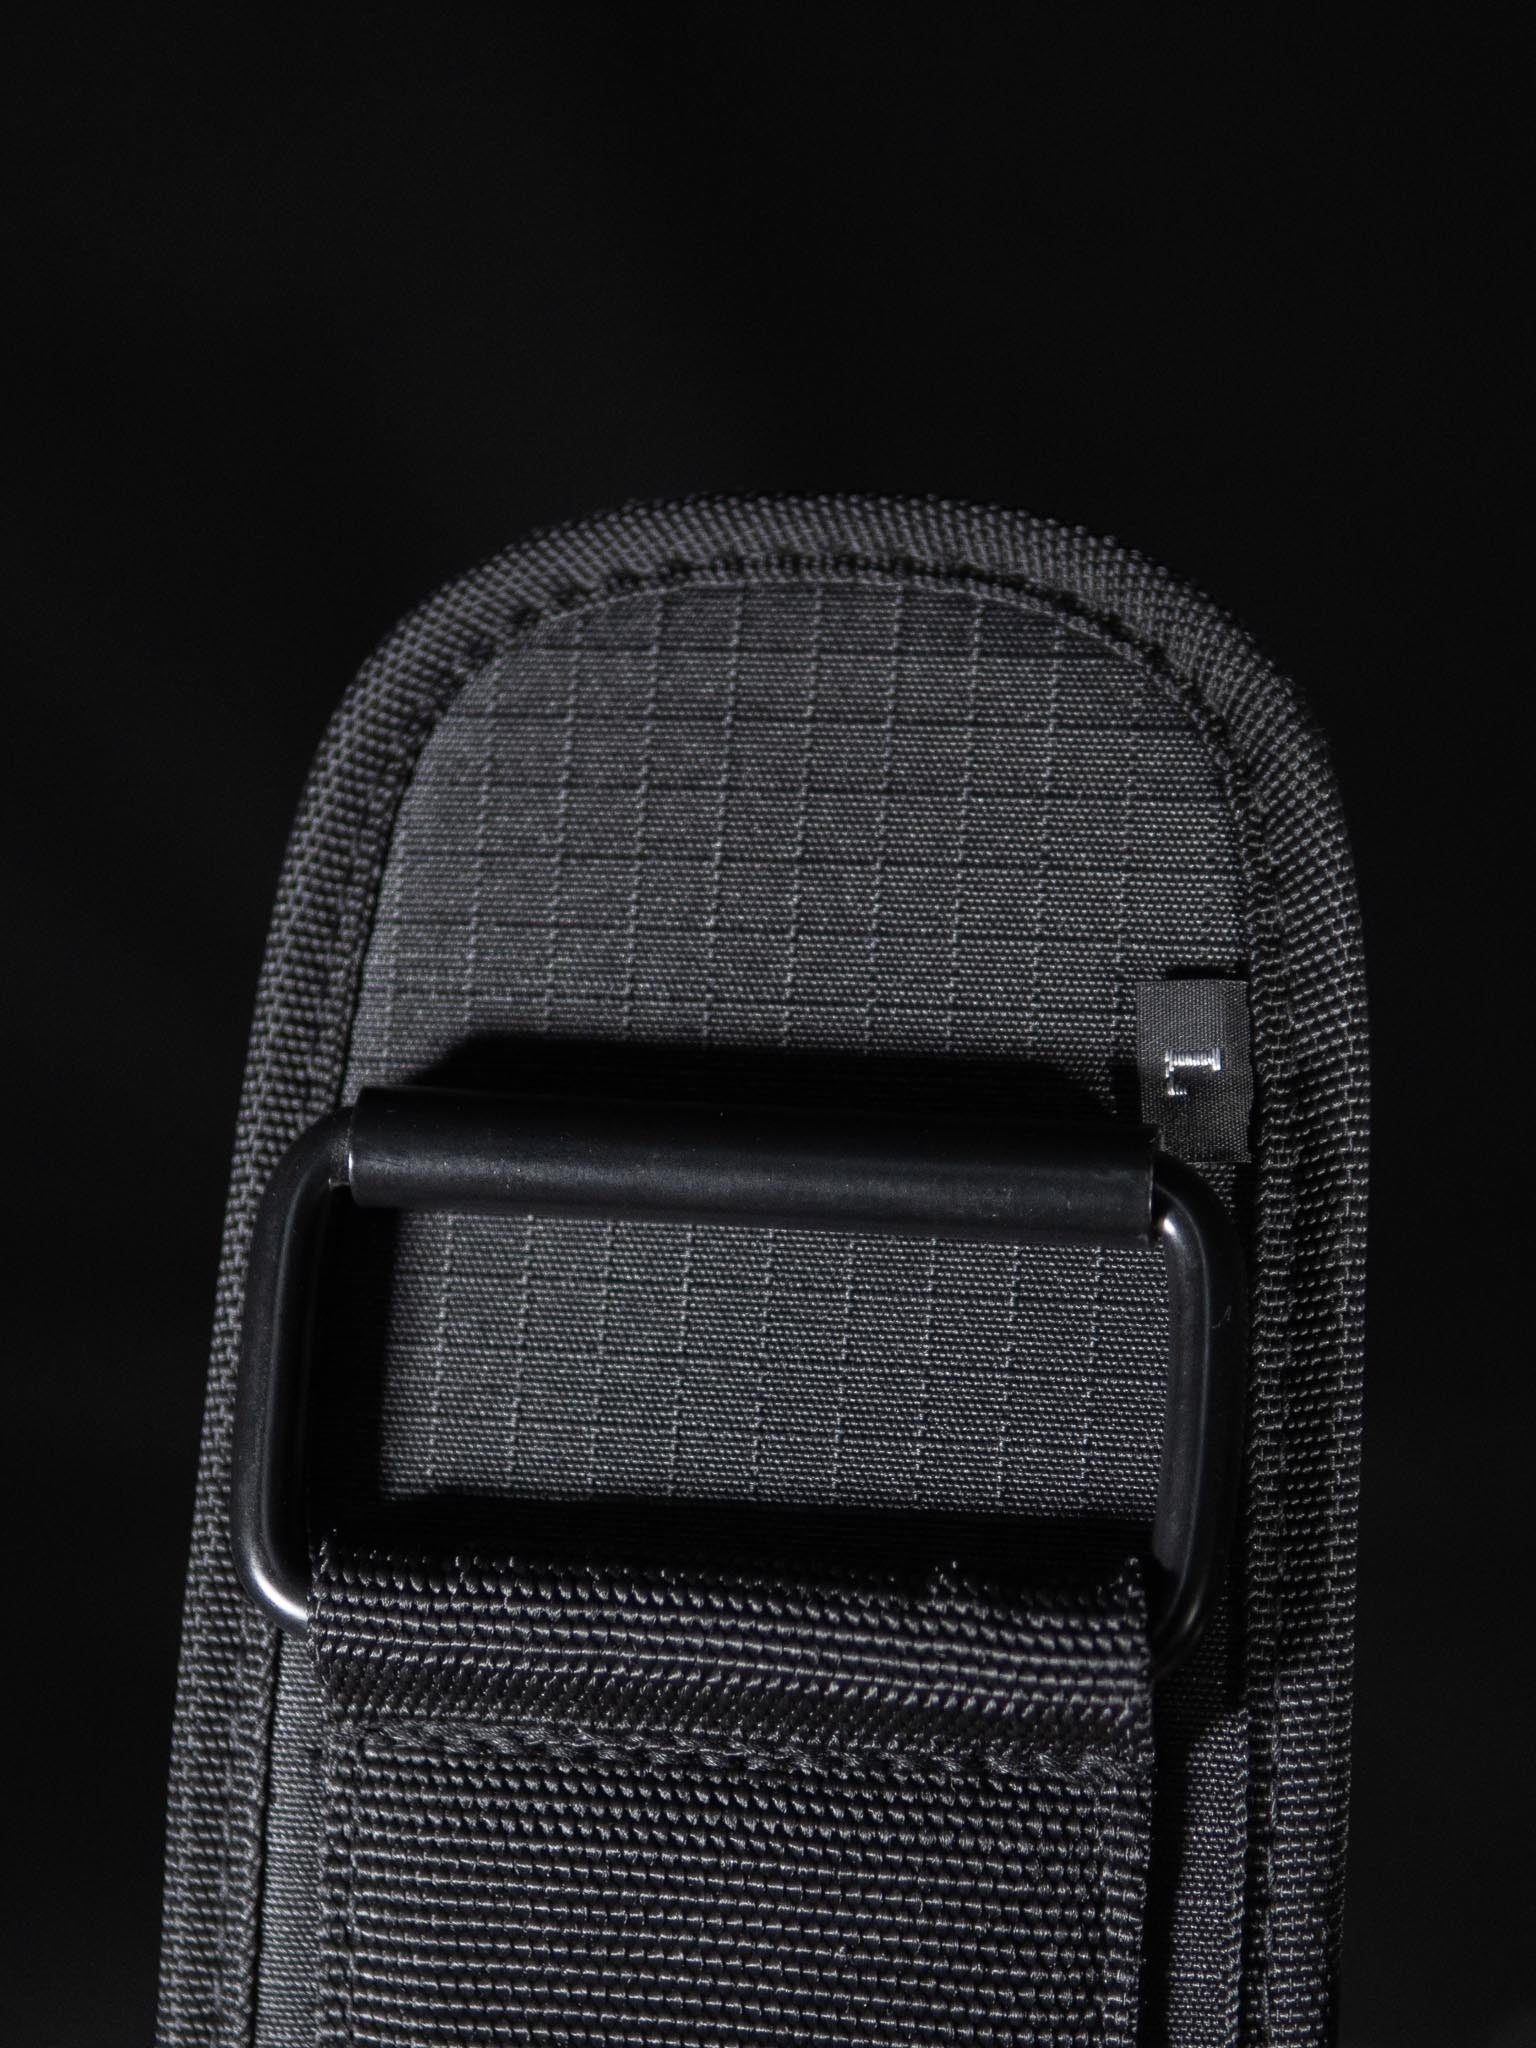 Reyllen X-prime EVA foam core weightlifting belt for crossfit feature 2